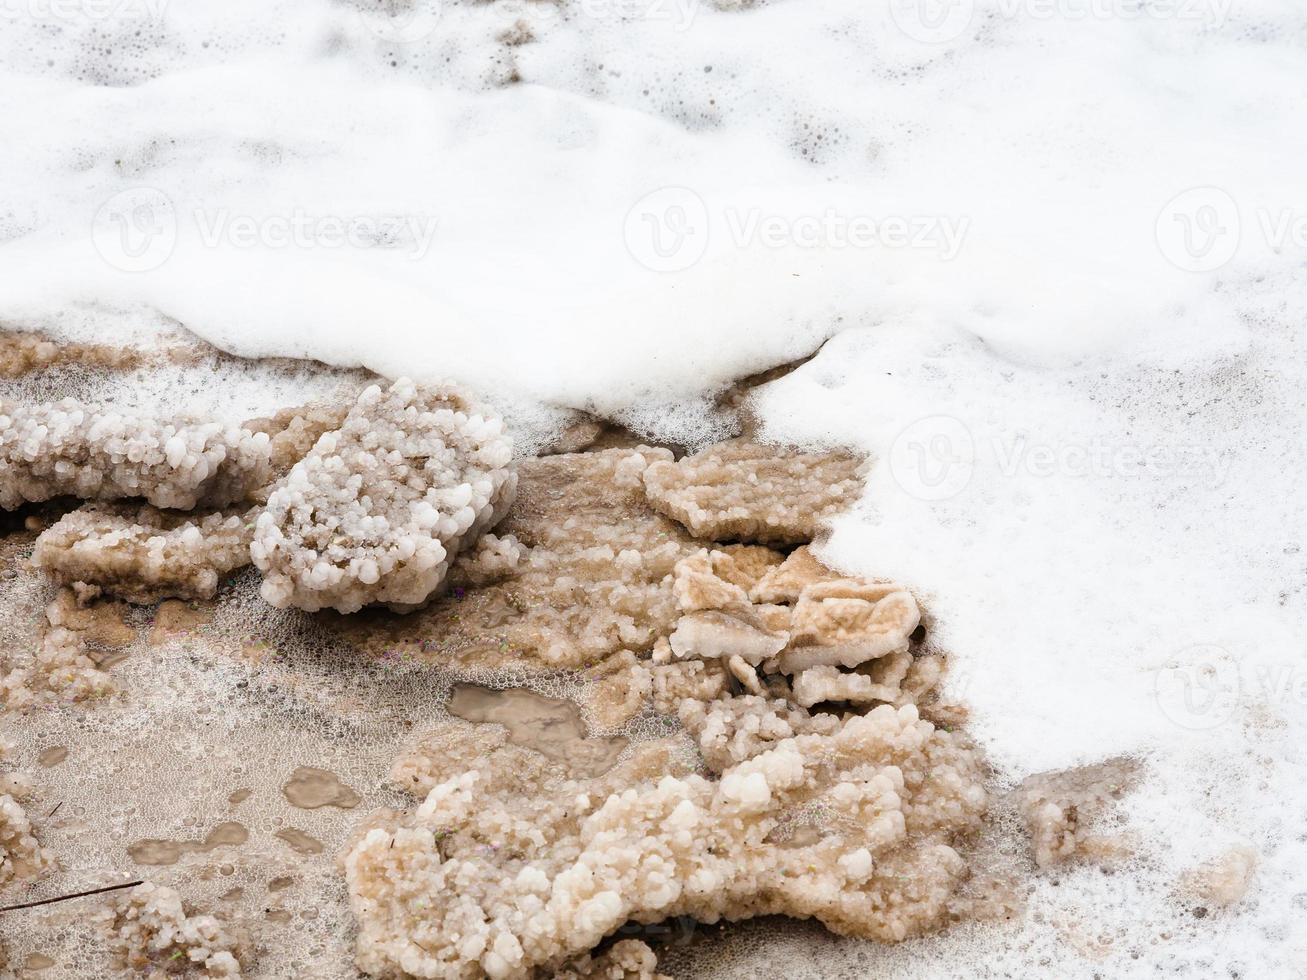 pedaços de sal natural em espuma do mar morto foto